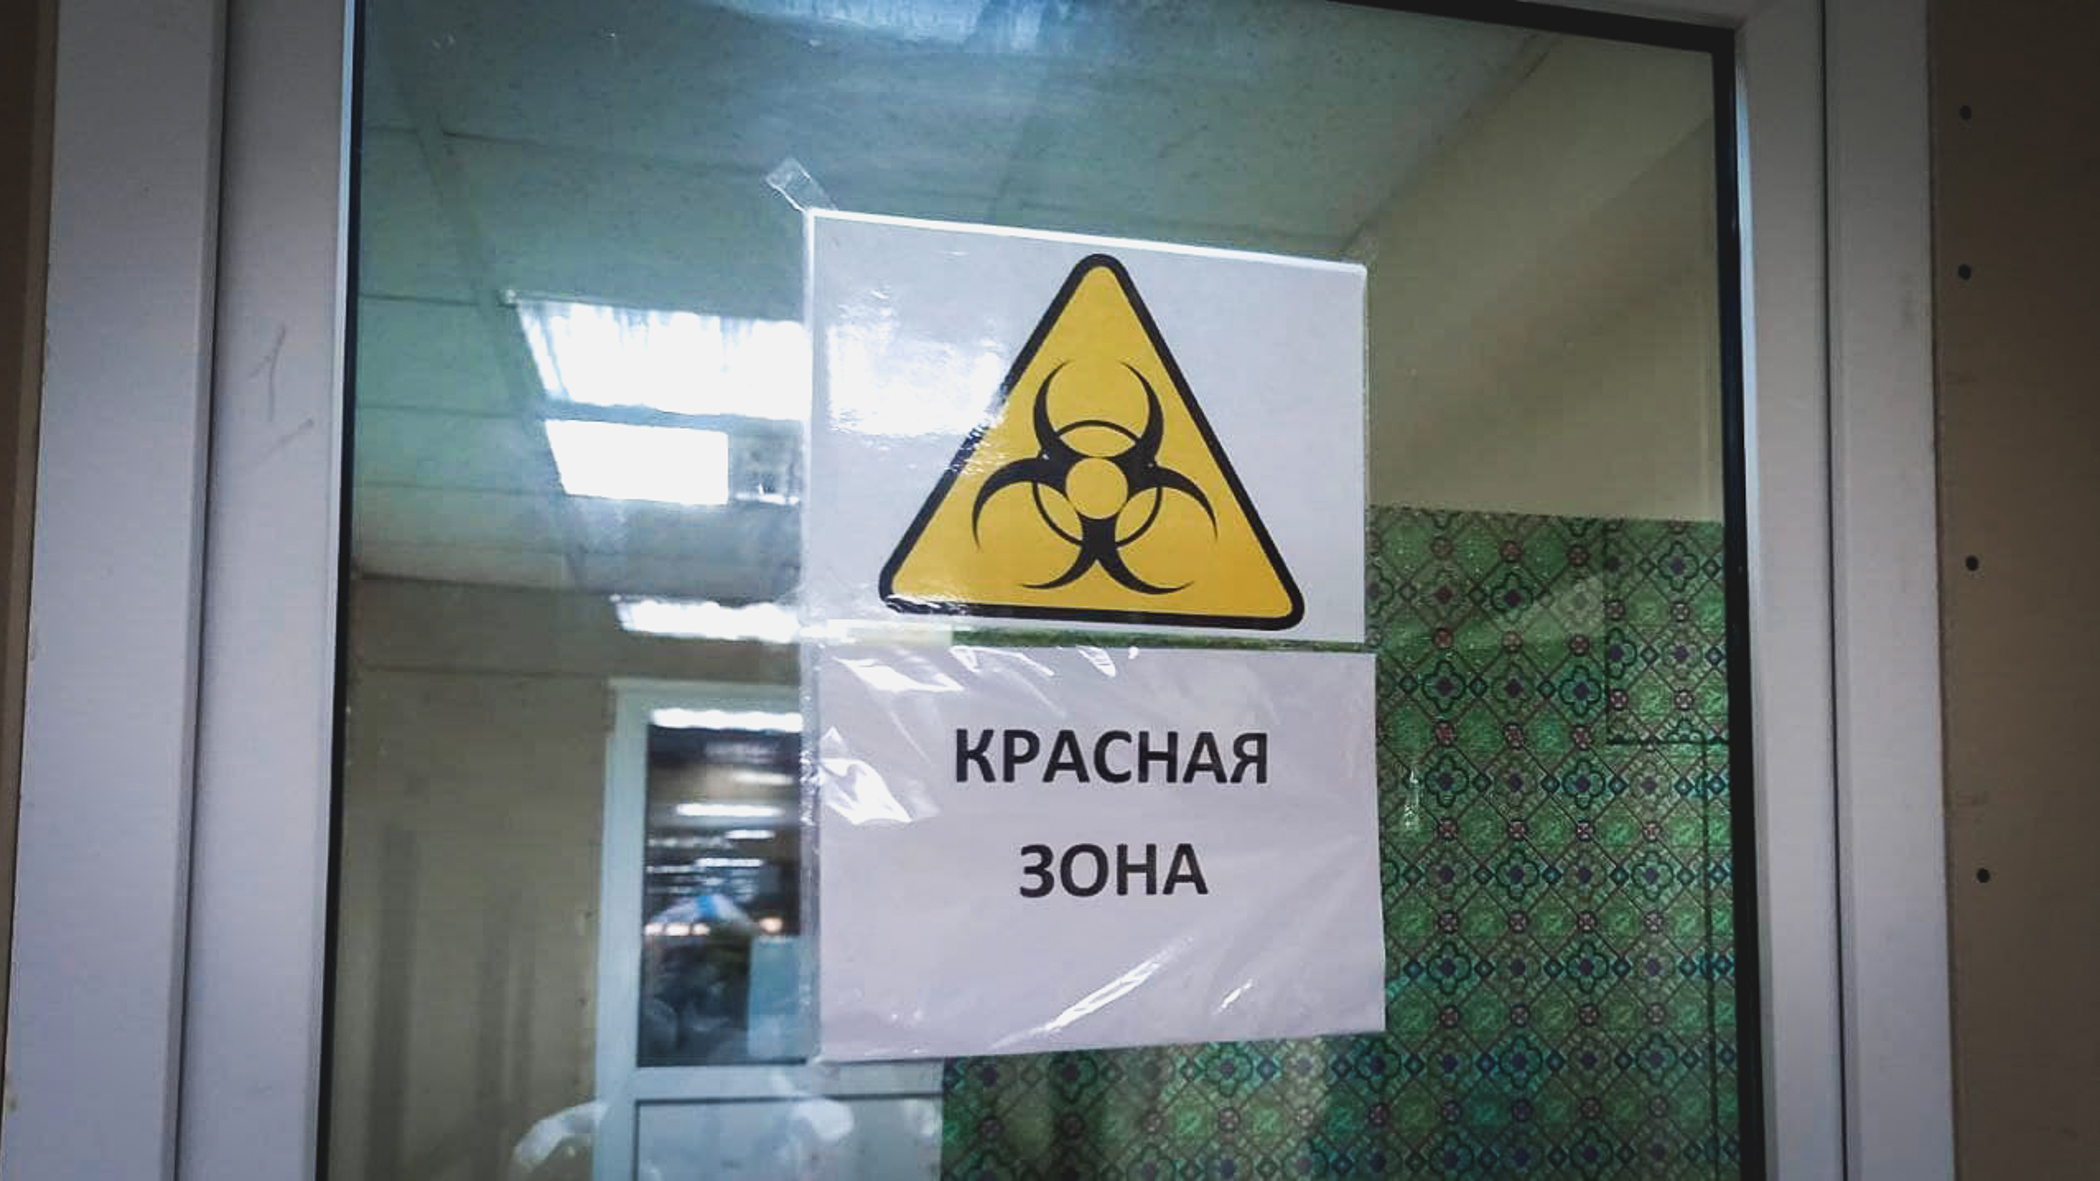 За сутки в Югре зарегистрировали 10 новых случаев коронавируса, 1 человек умер